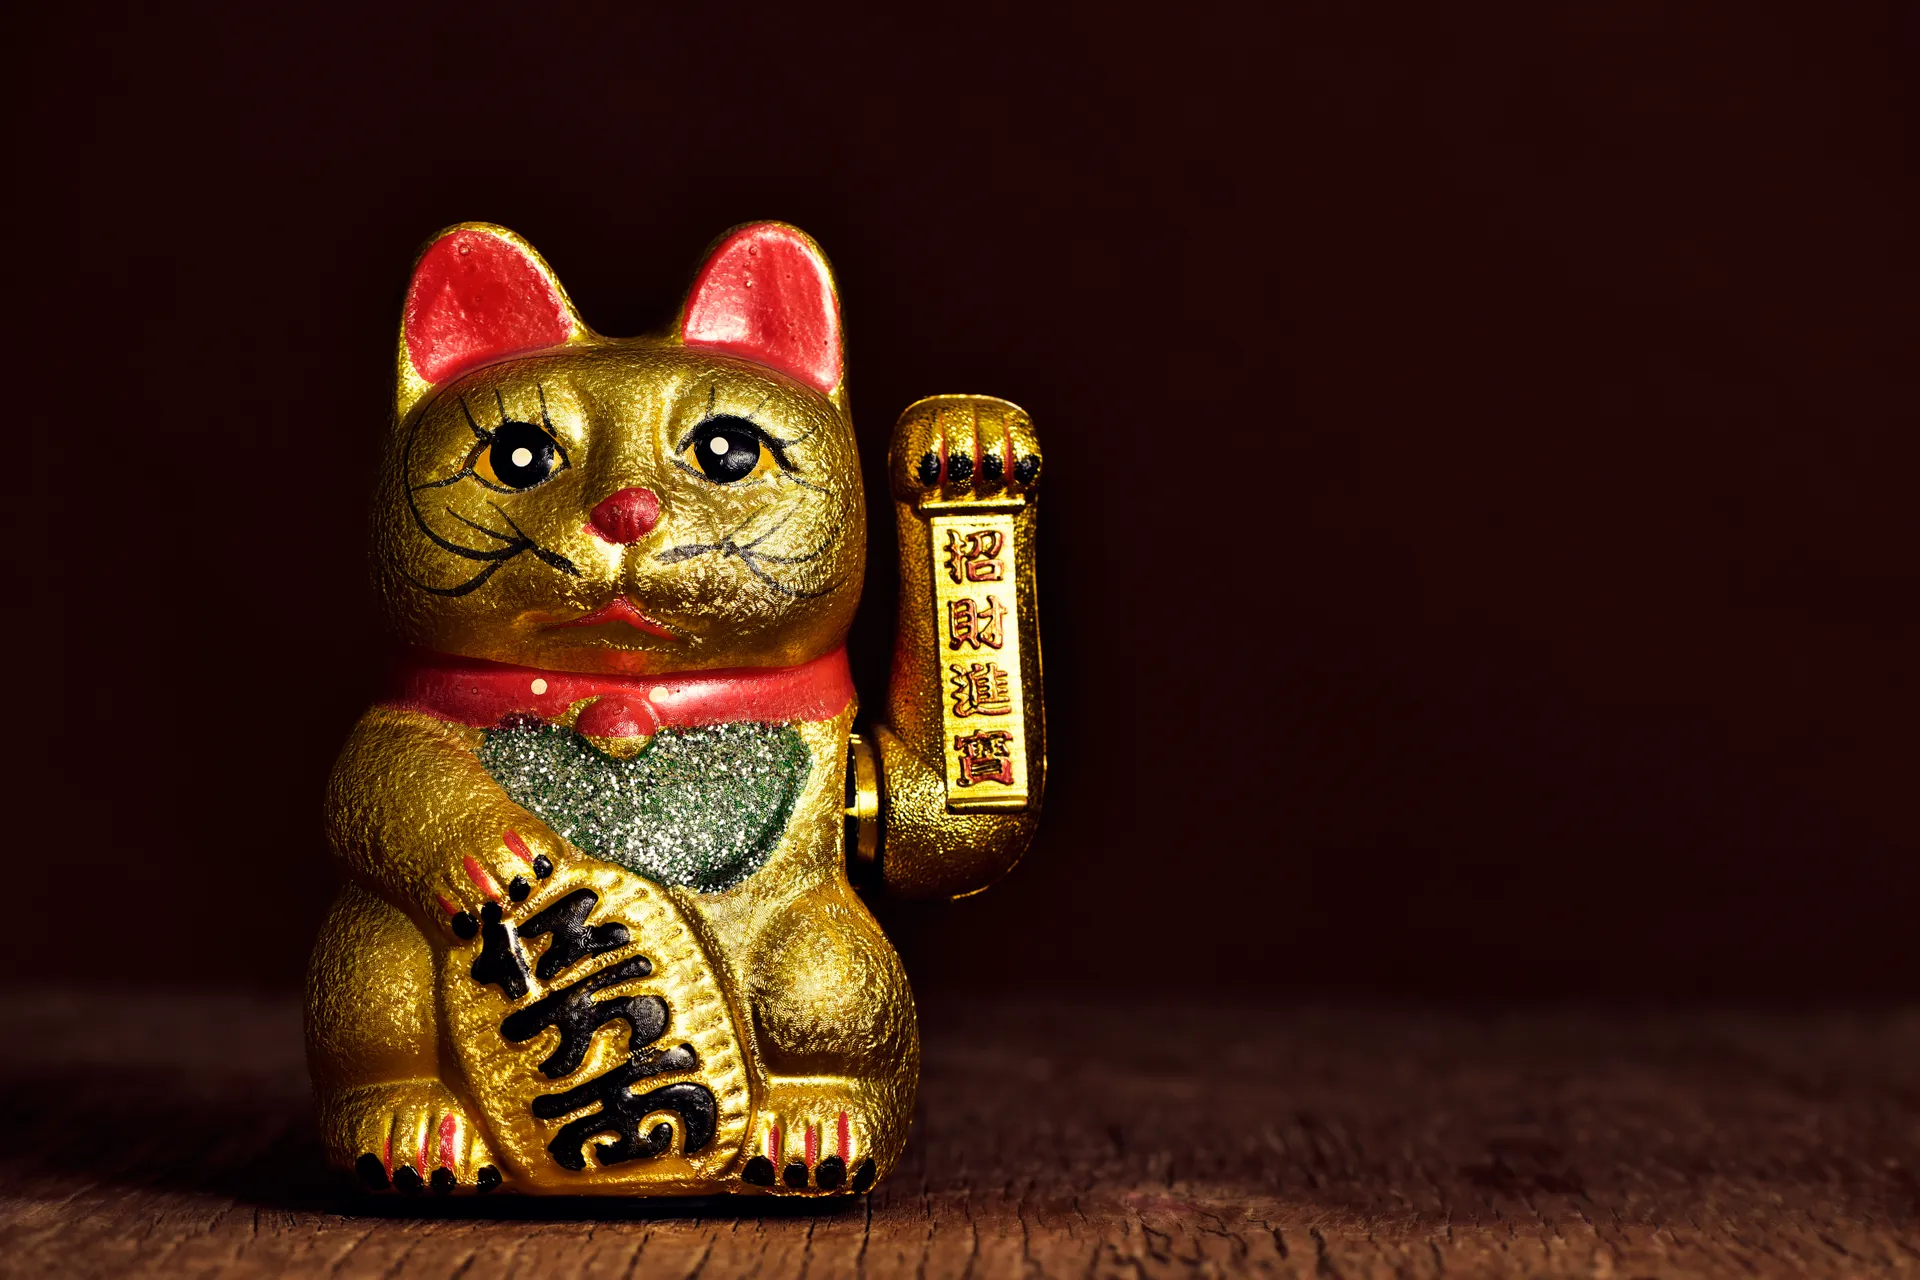 Maneki-neko (Nhật Bản) Bạn chắc chắn đã từng nhìn thấy chú mèo này giơ chân lên trong nhiều bữa ăn ở các nhà hàng Nhật Bản, nhưng bạn có biết rằng nó đã là bùa may mắn của tổ tiên kể từ thời nhà Đường, vào thế kỷ thứ nhất của lịch sử Trung Quốc? Ban đầu được làm bằng sứ, bây giờ nó có nhiều dạng khác nhau. Nếu con mèo giơ chân lên trời là để thu hút may mắn và tài lộc - một số người thậm chí còn cho rằng chân càng cao thì may mắn càng tốt. Cuối cùng, màu sắc của nó quyết định loại may mắn mà nó mang lại: màu xanh lá cây cho sự thành công, màu đen để xua đuổi tà ma và màu vàng cho sự dồi dào... Sự lựa chọn là của bạn.